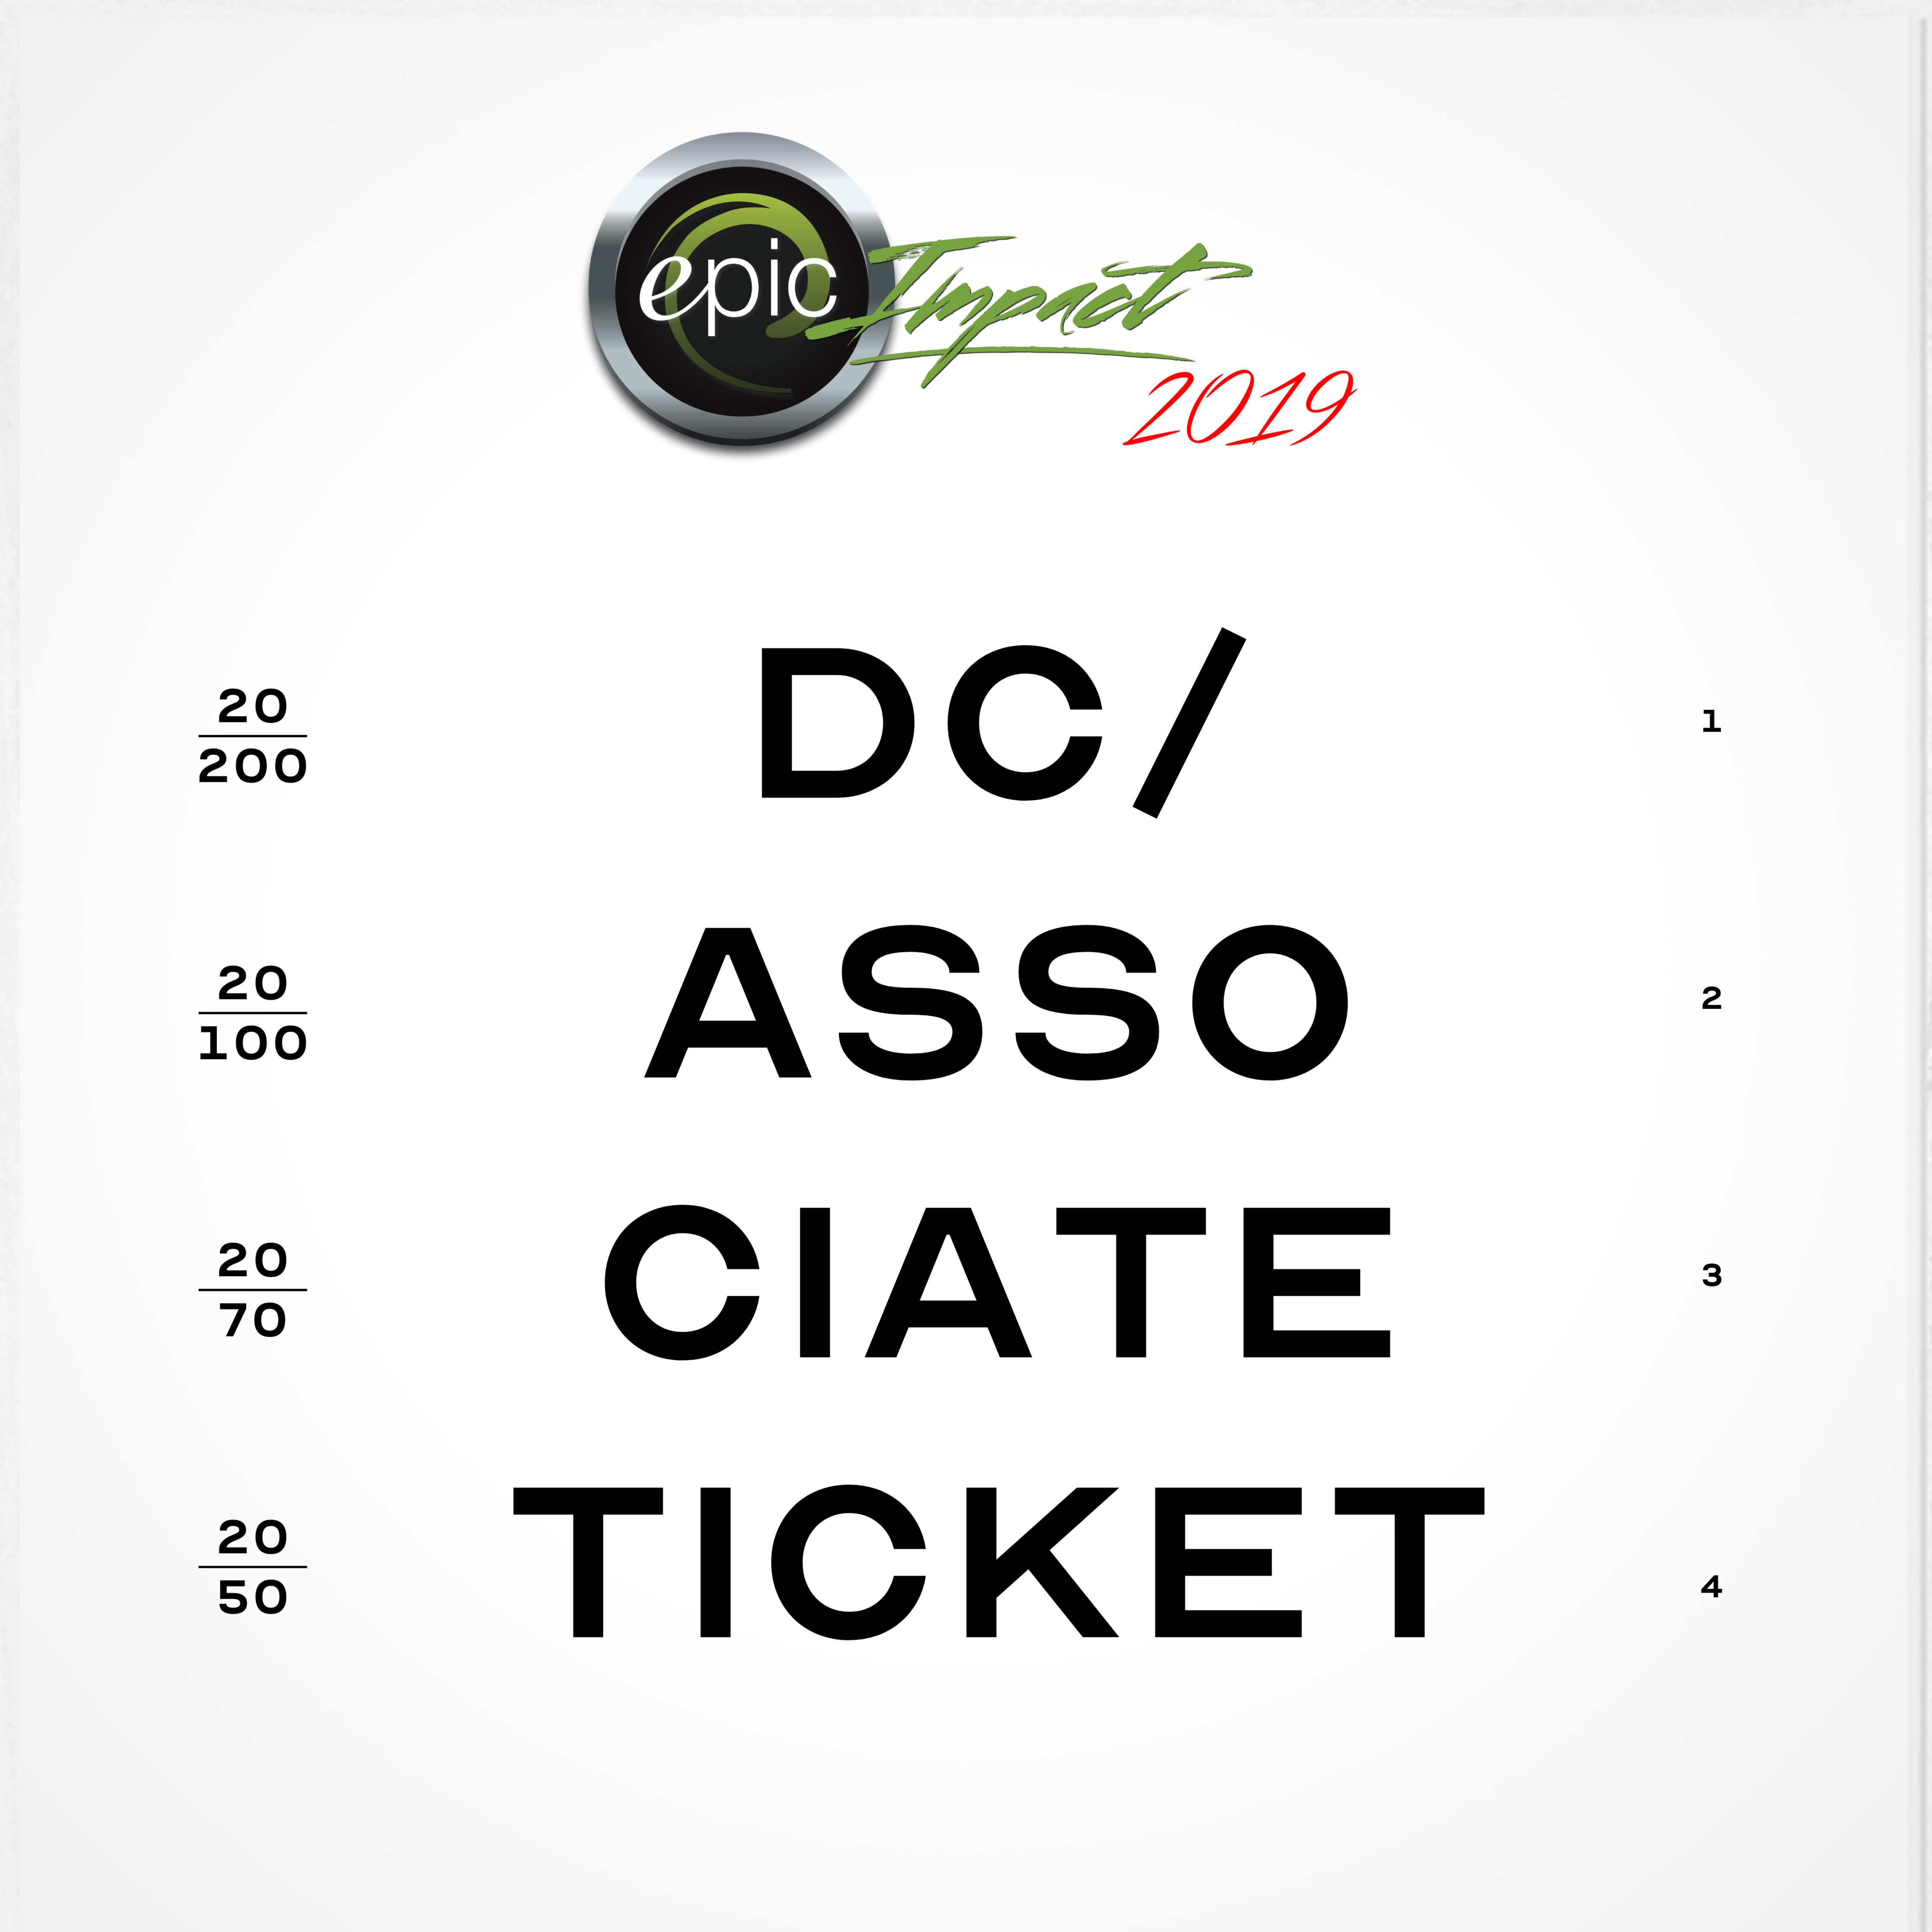 Impact 2019 DC Ticket